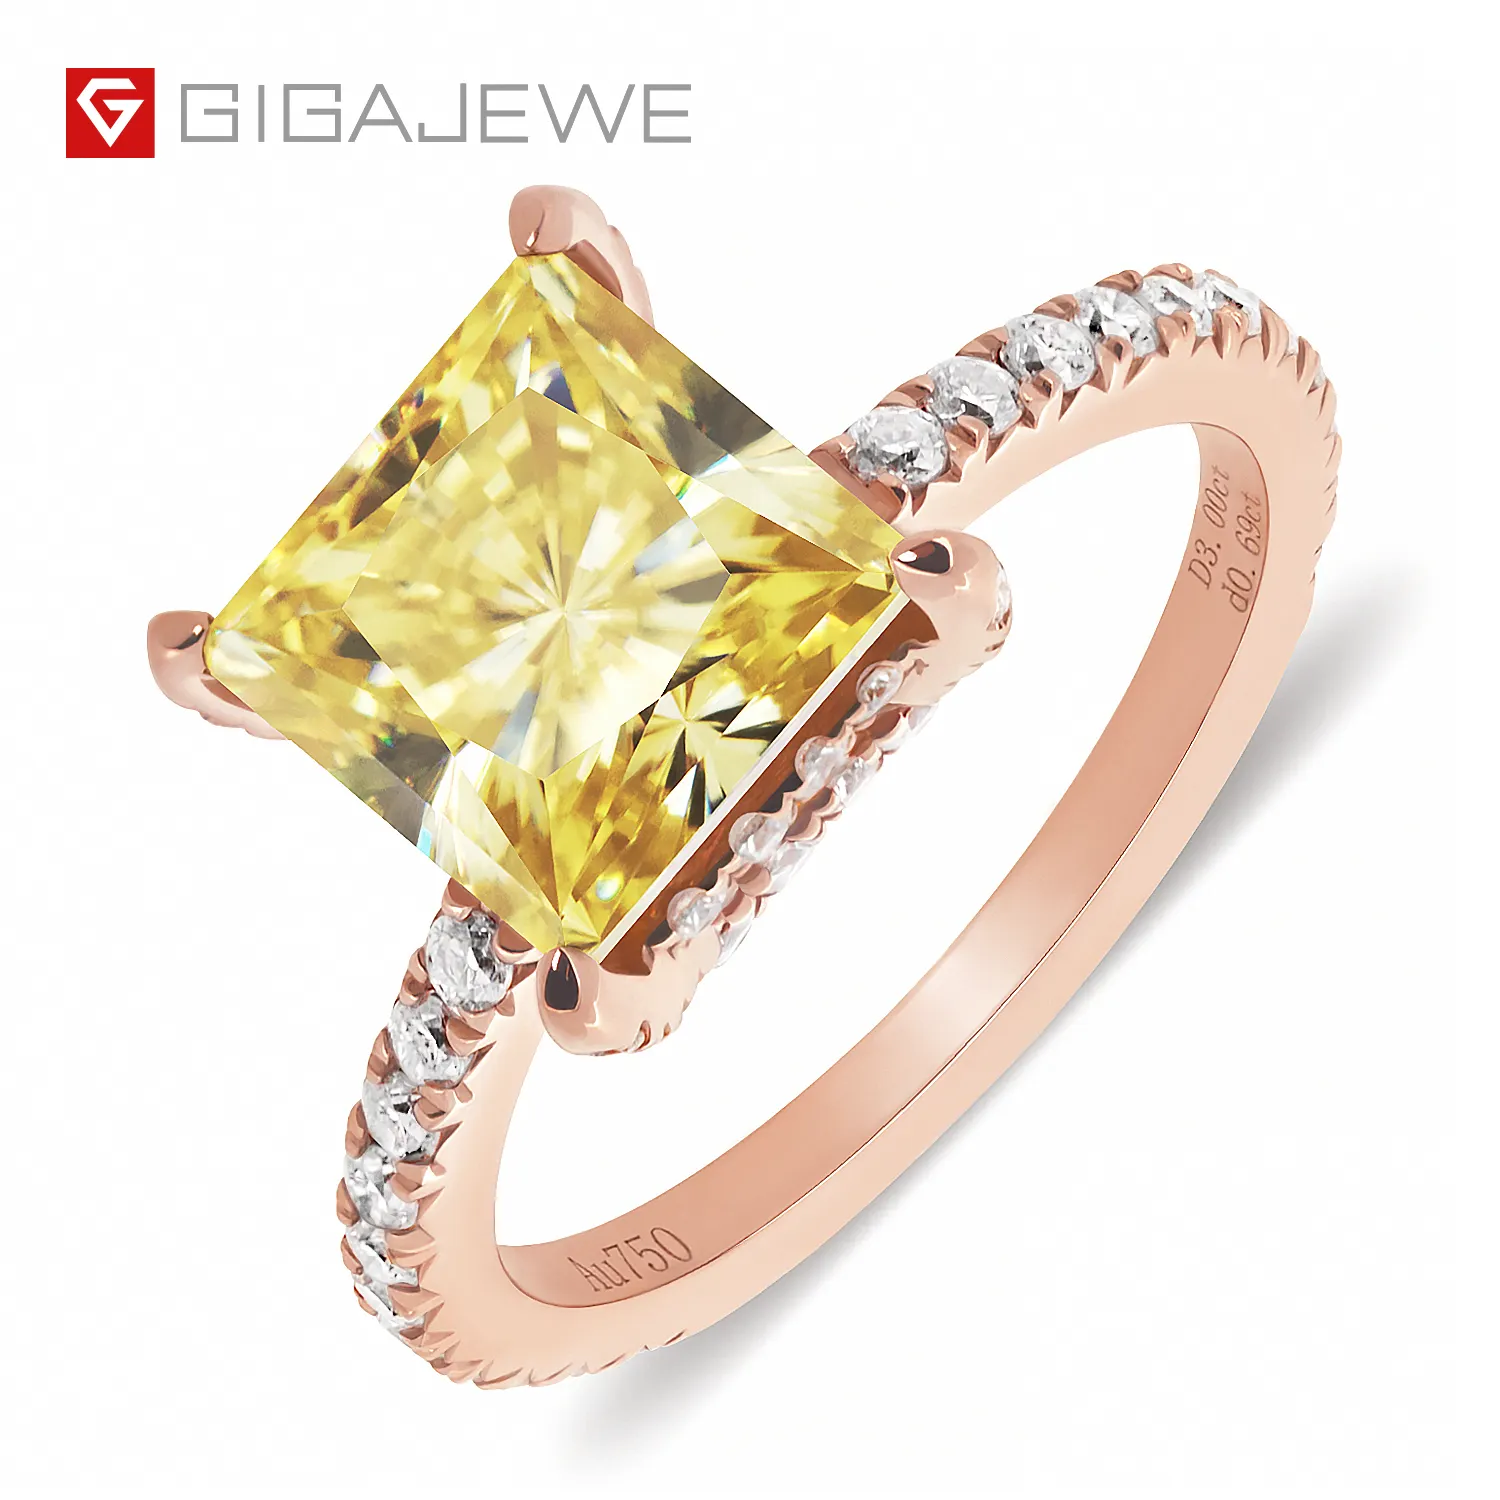 GIGAJEWE Total Vivid Yellow 3ct Princess Cut and Ring Moissanite 9K/14K/18K Rose Gold , Moissanite Ring, Wedding Engagement Ring